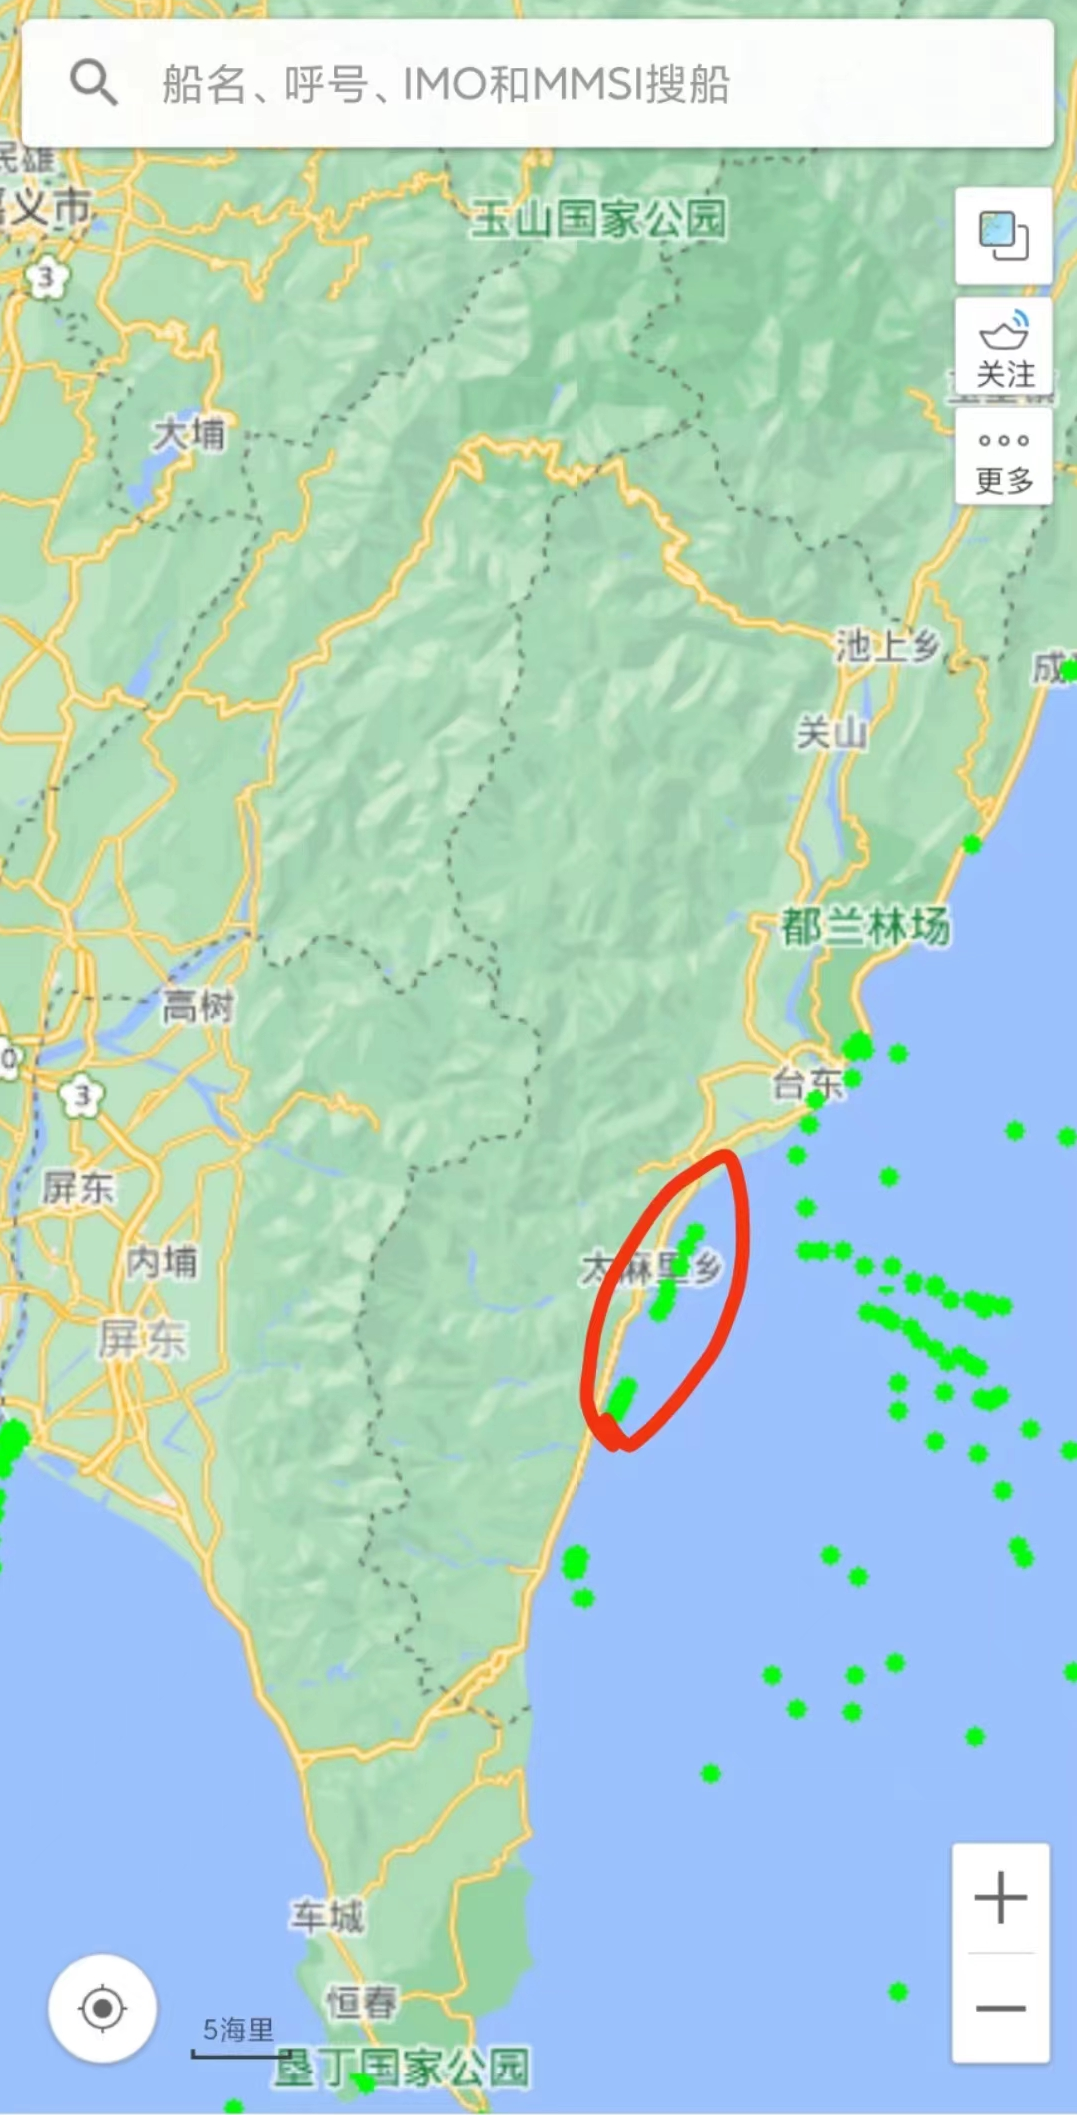 大批大陆渔船在台湾岛附近登陆？气氛有点诡异了……官方最新通报来了